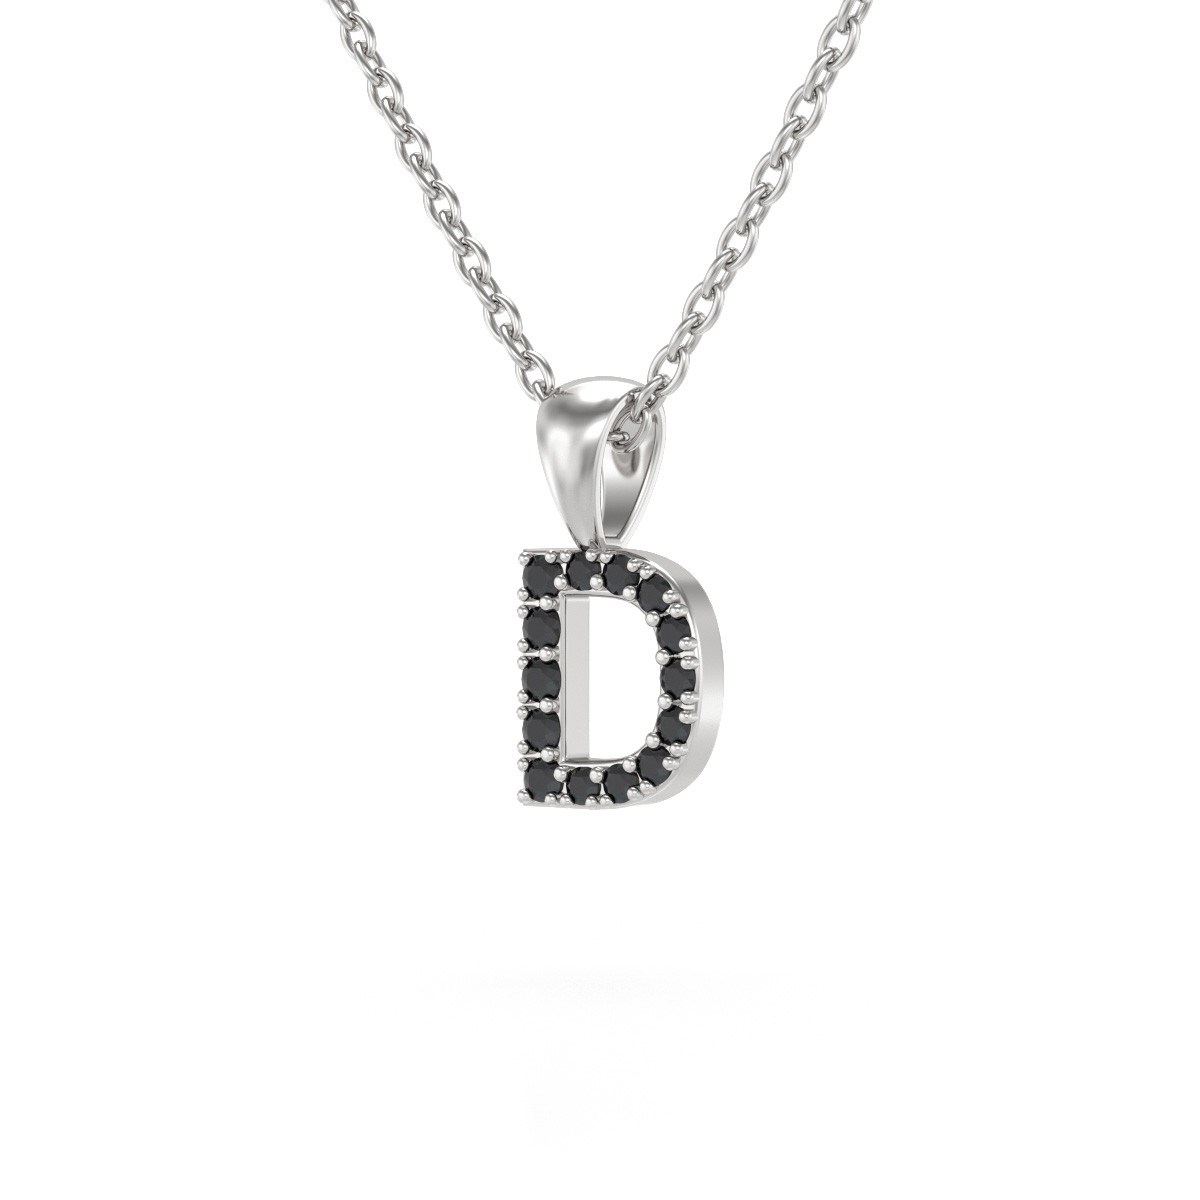 Collier Pendentif ADEN Lettre D Or 750 Blanc Diamant Noir Chaine Or 750 incluse 0.72grs - vue 3